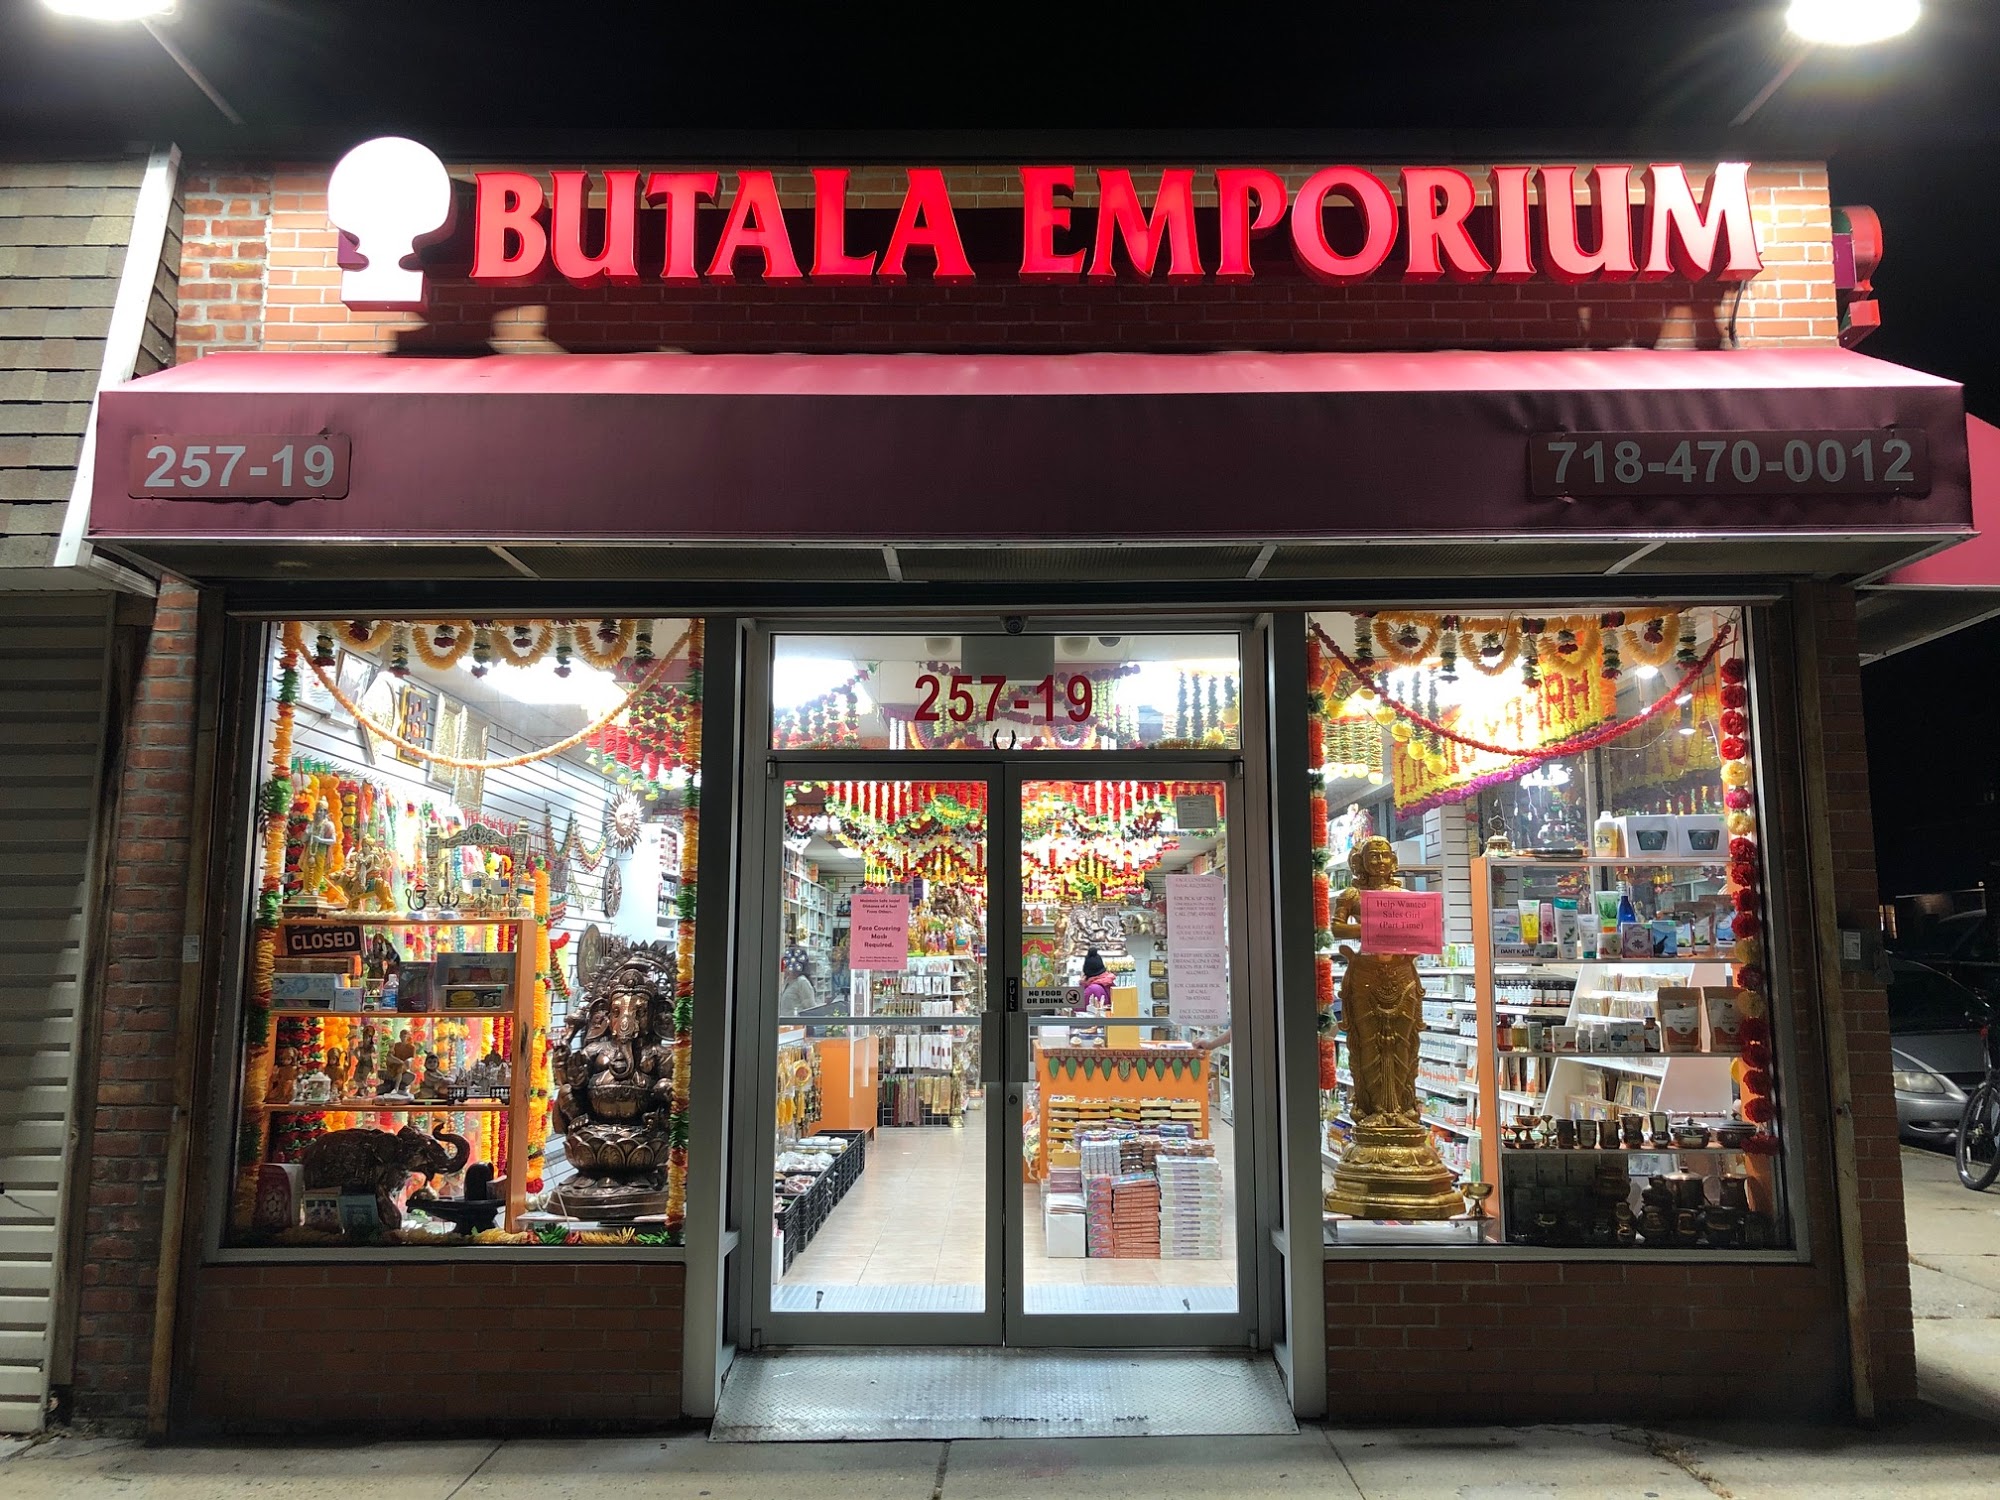 Butala Emporium Inc